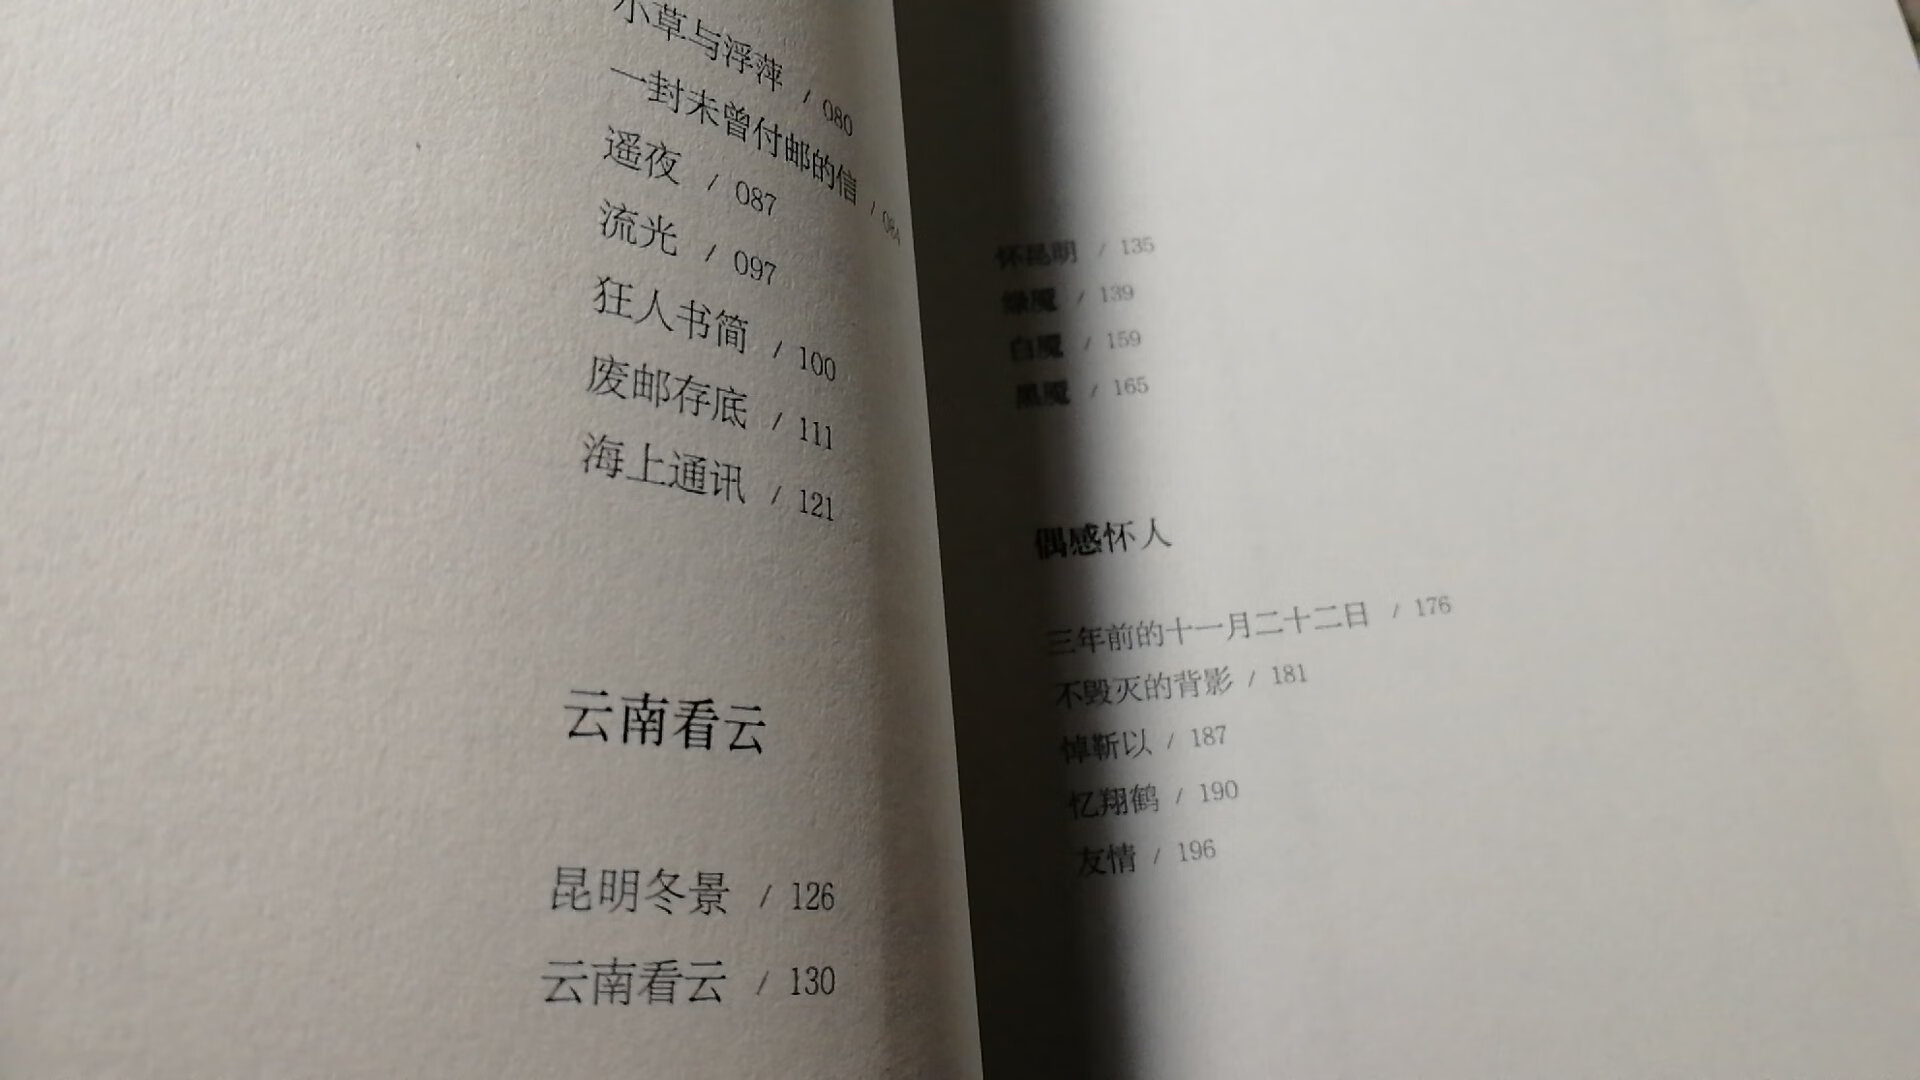 看完《边城》，对沈从文的书更感兴趣了，就买了同出版社的《湘行散记》。